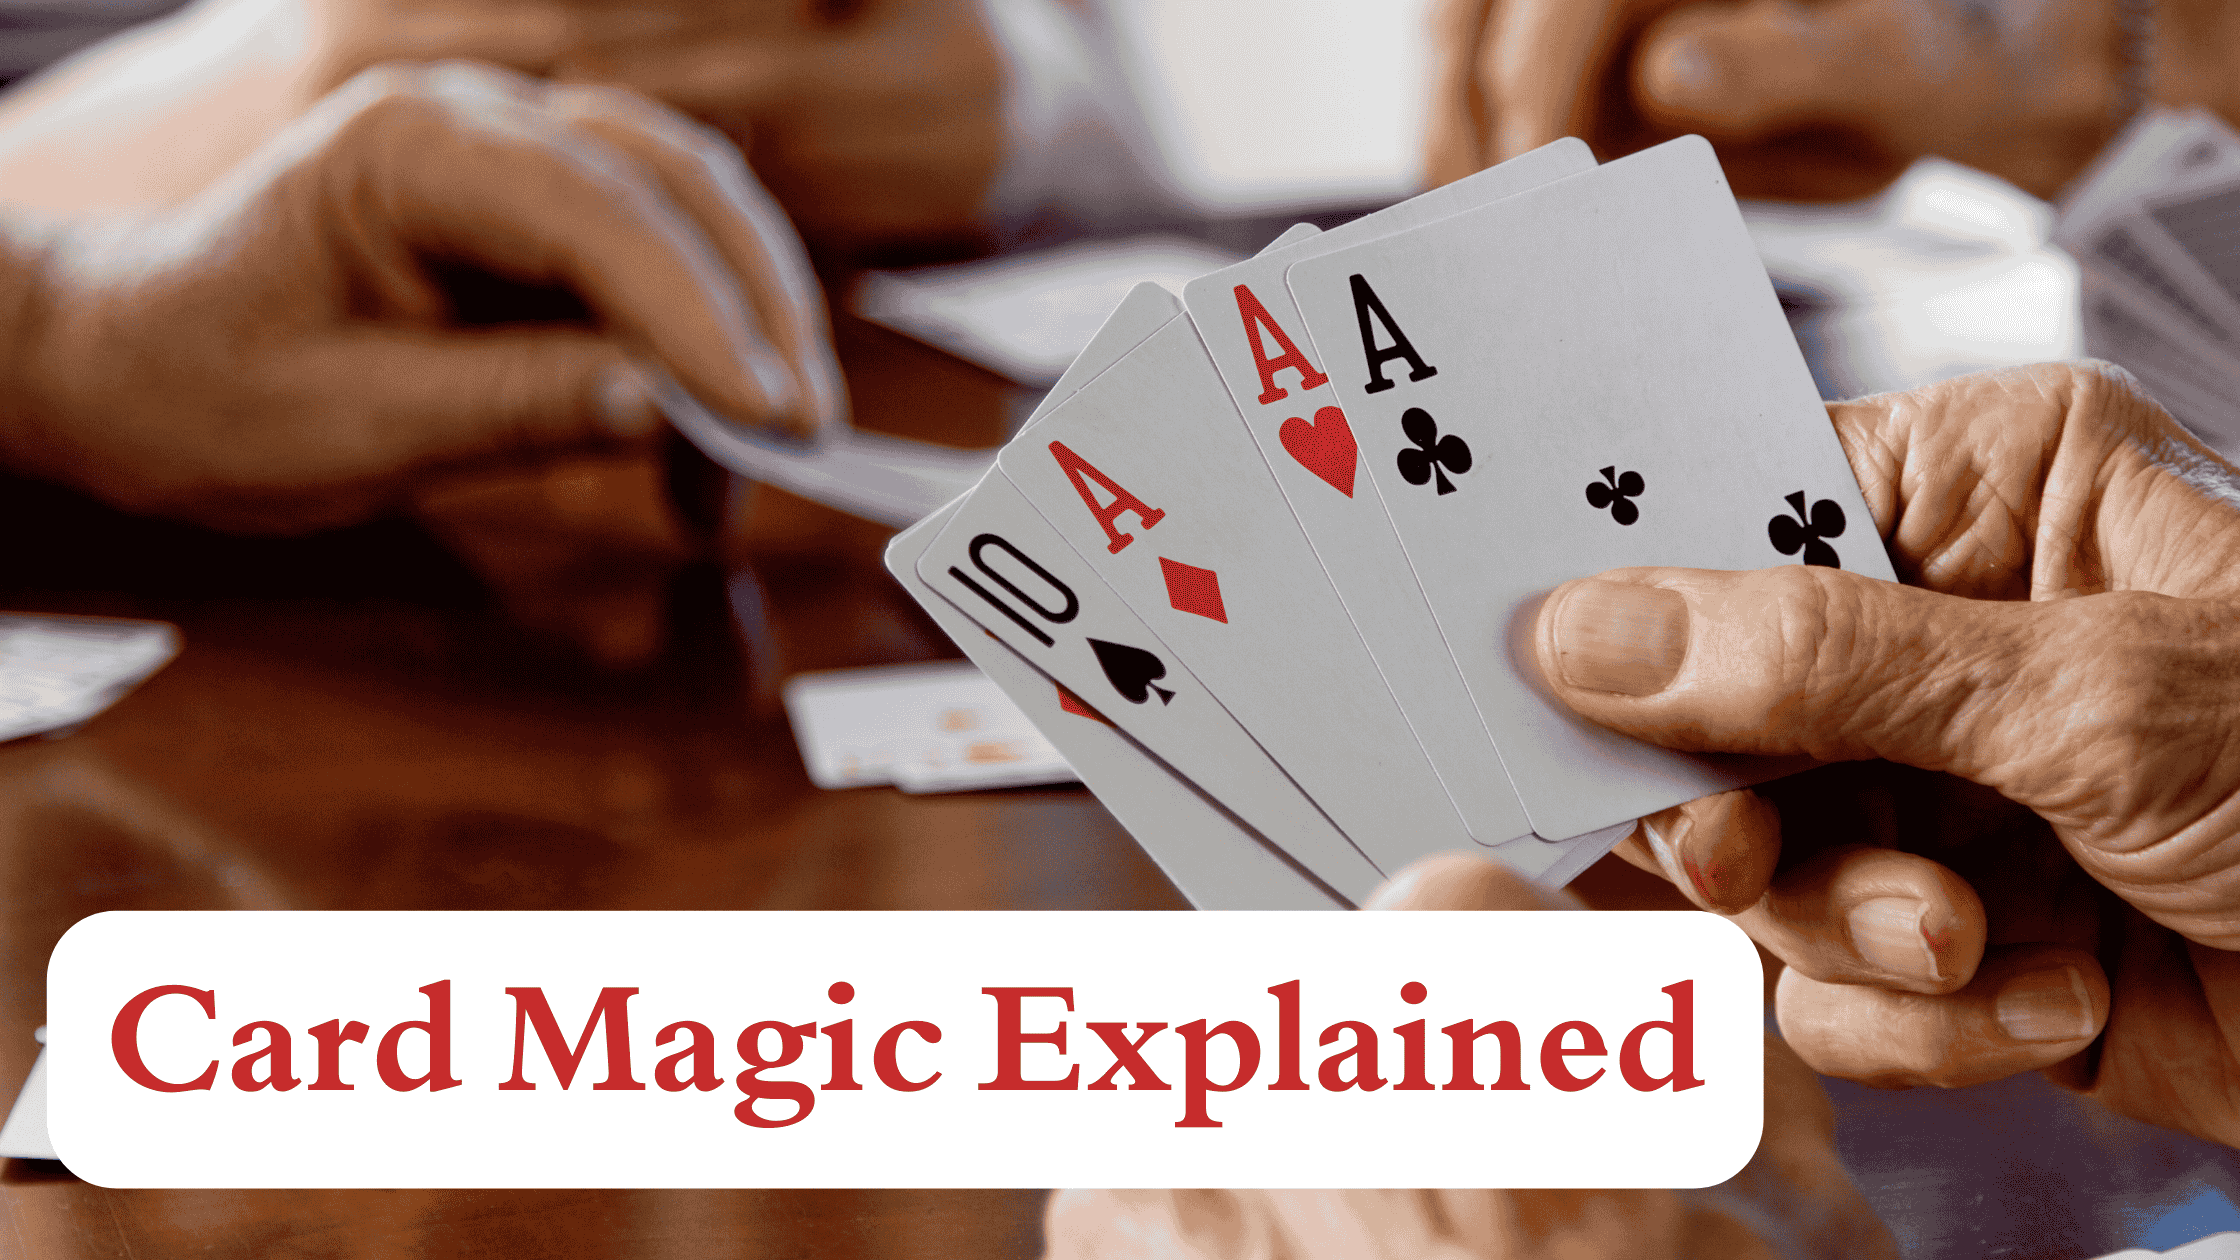 Card Magic Explained